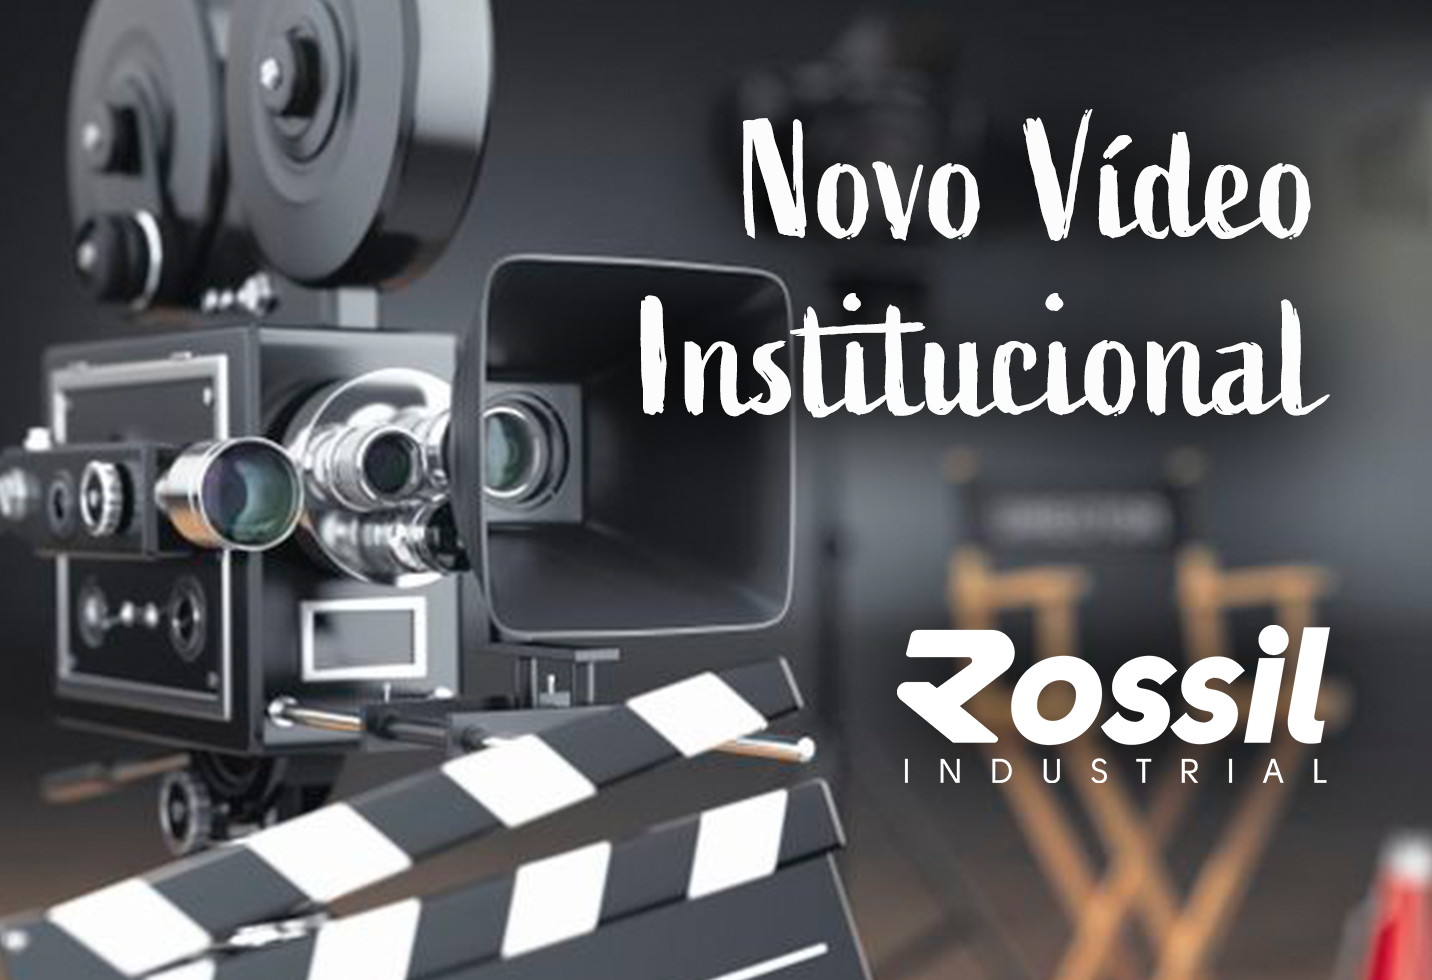 Novo Vídeo Institucional da Rossil